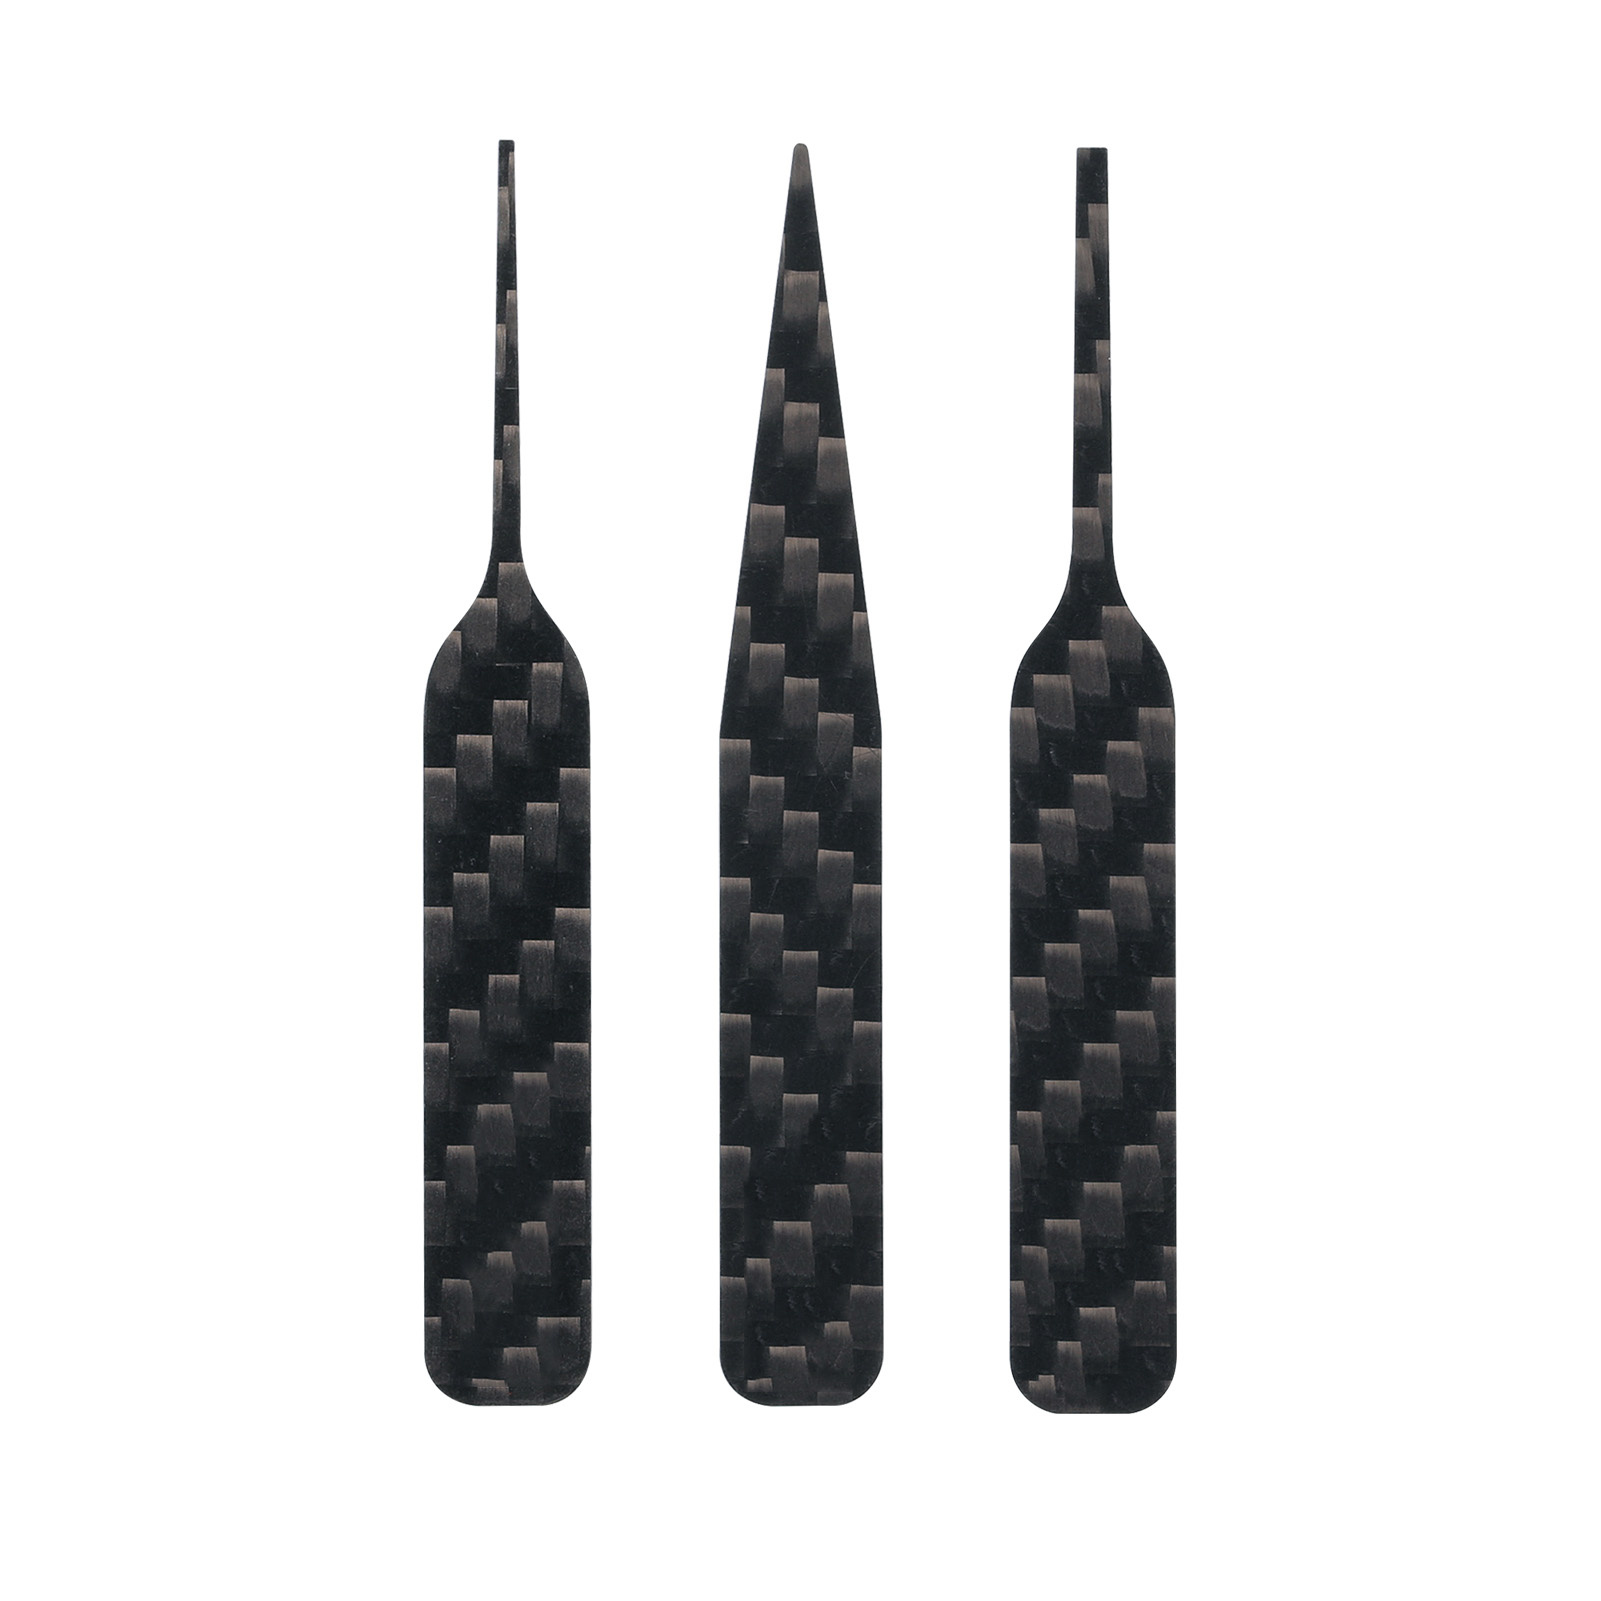 CFB-S01 DSPIAE Carbon fiber Grinding Tools, 3 pcs.